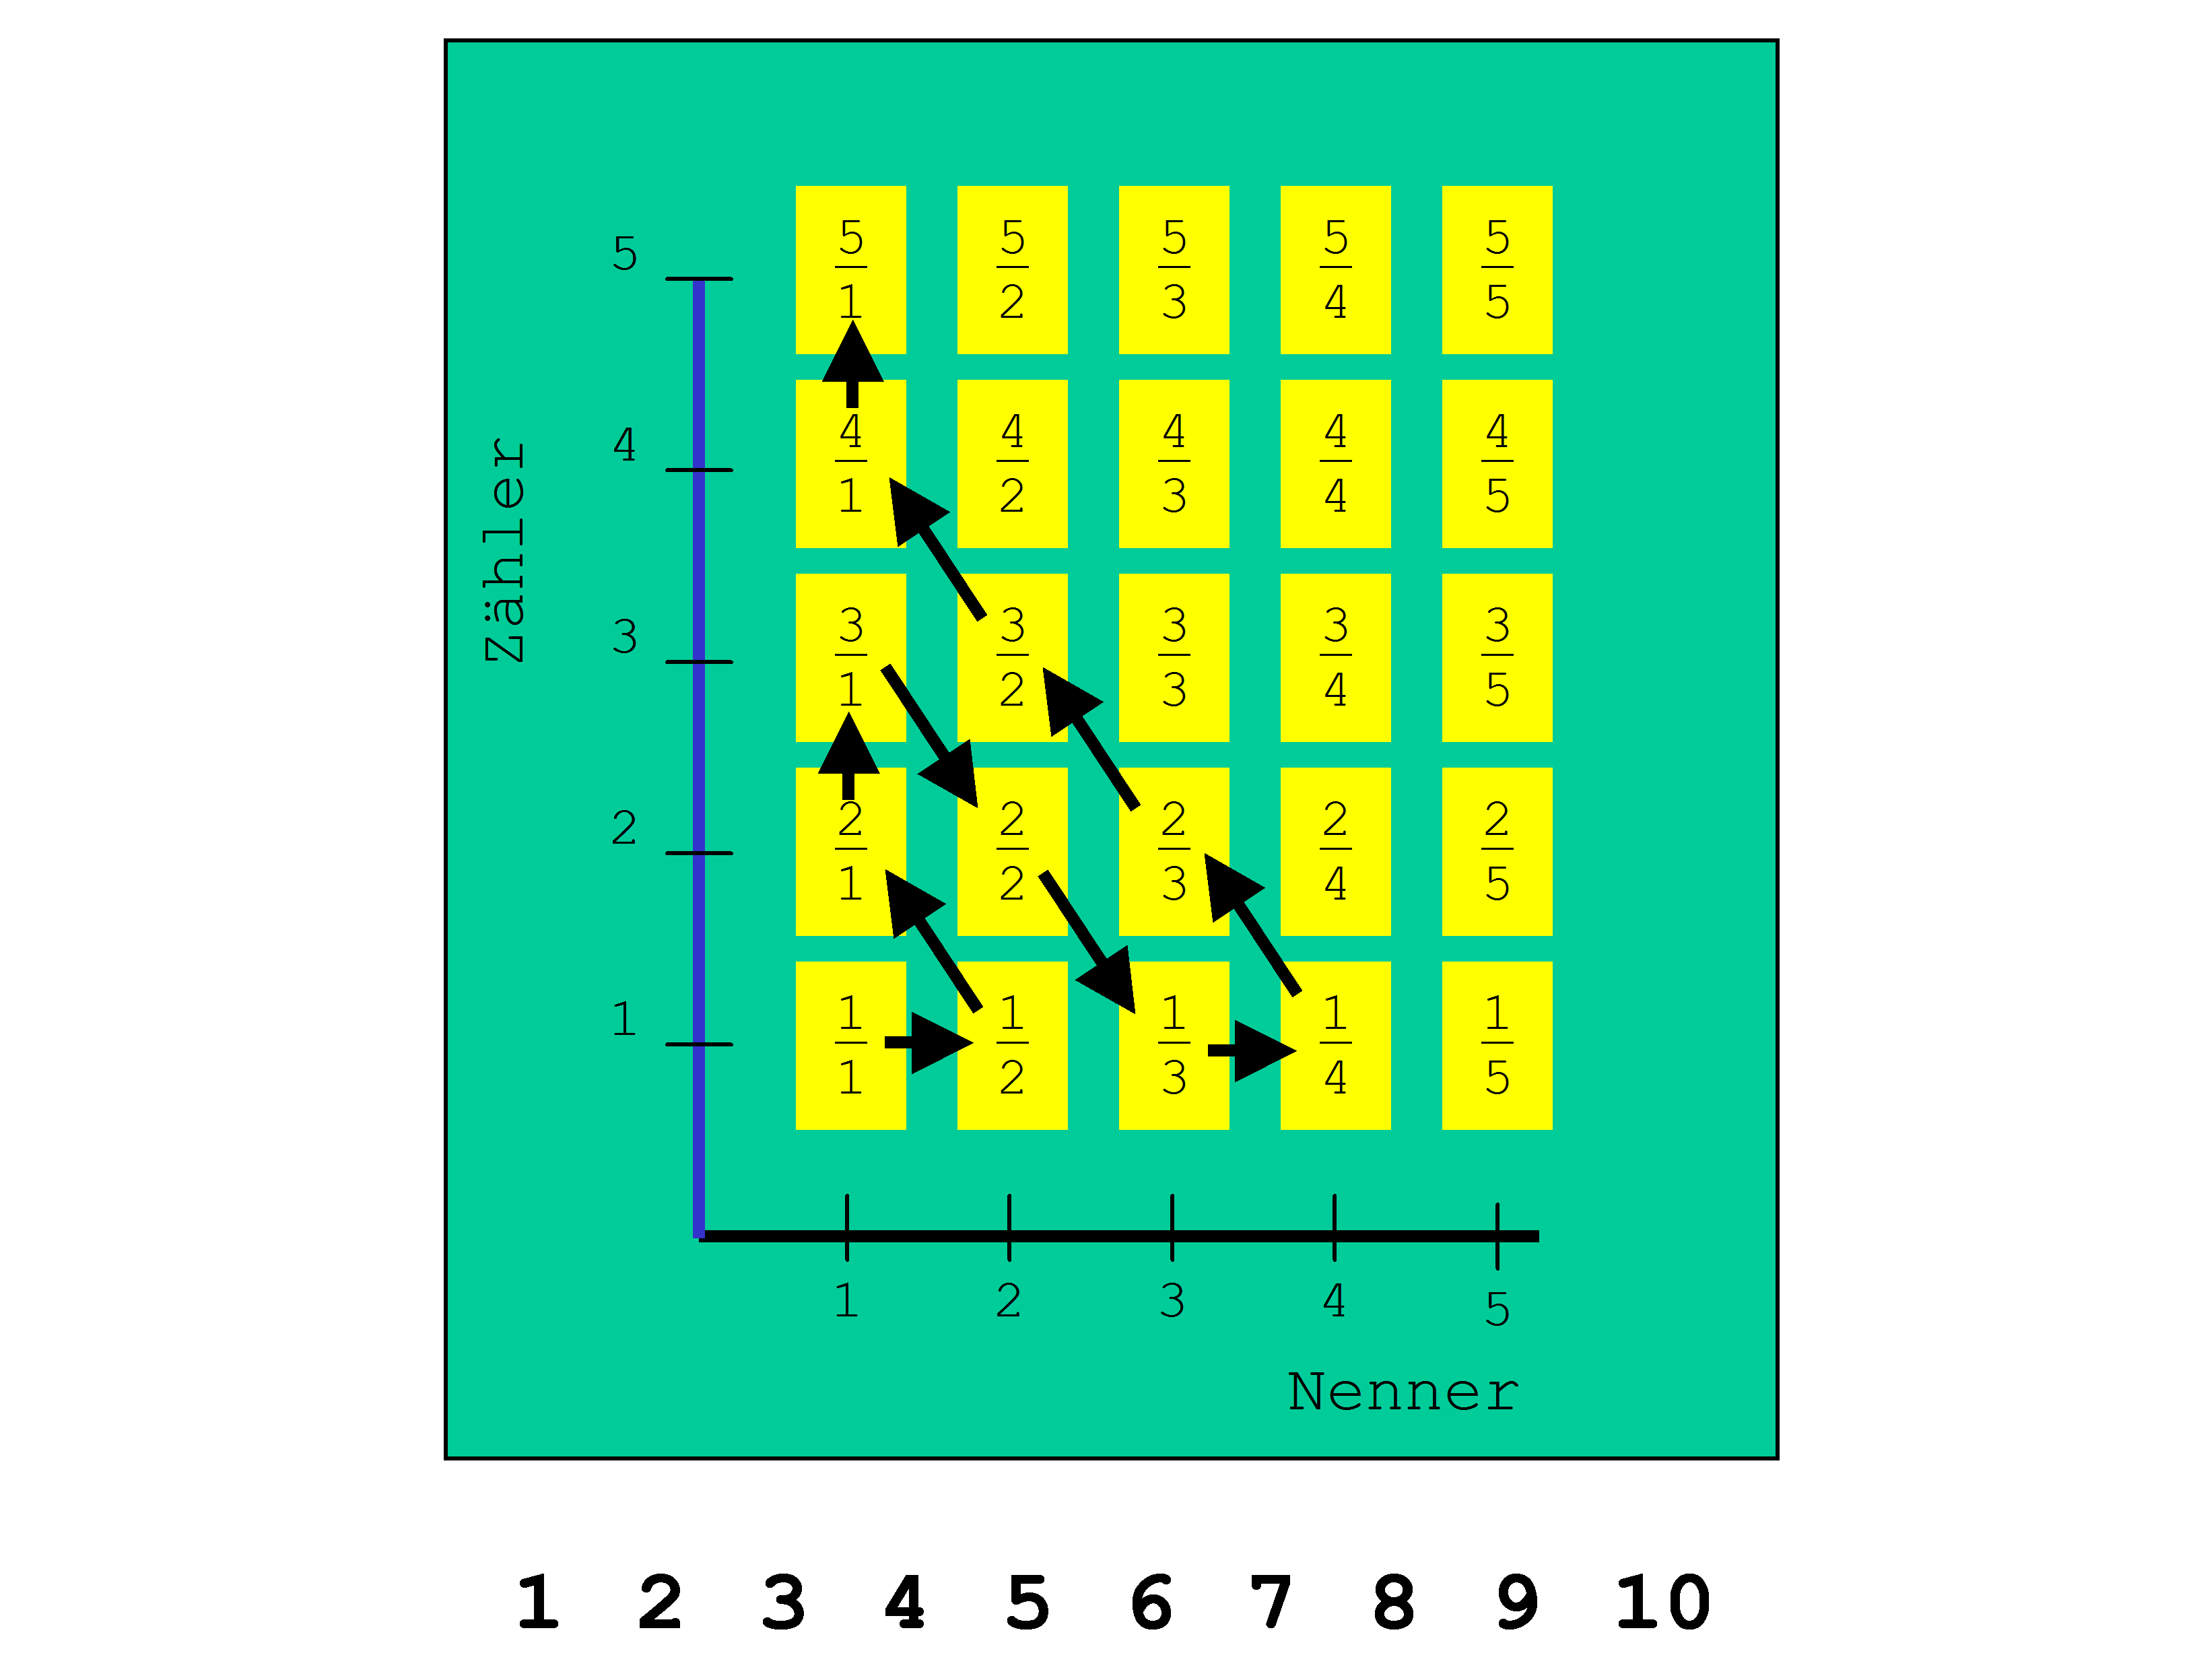 Cantor’sche Diagonalverfahren - Matrix Brüche